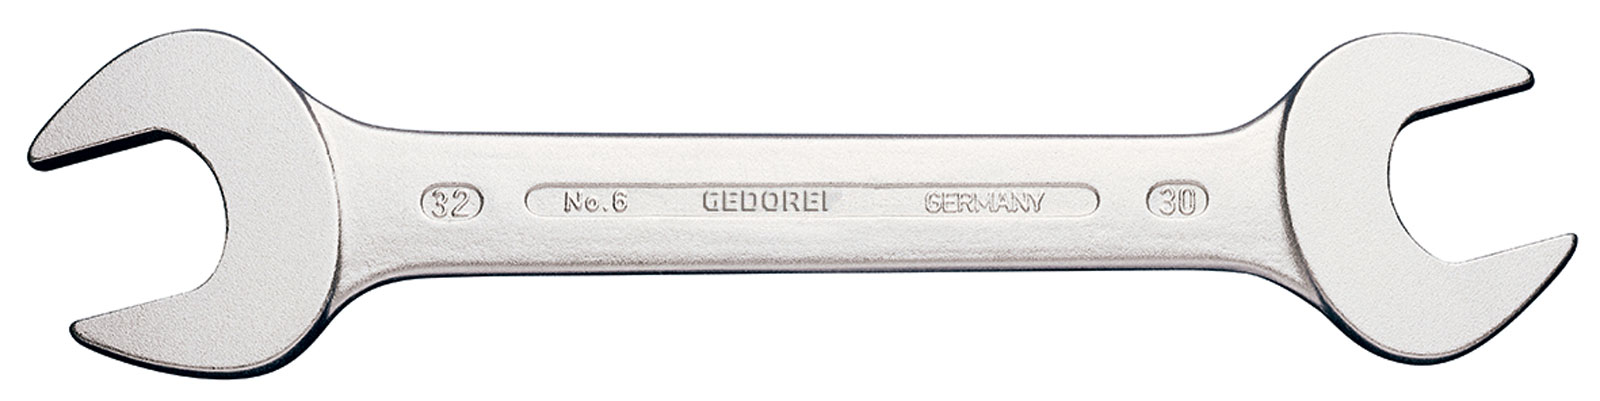 Picture of Doppelmaulschlüssel ähnlich DIN3110 1.x1.1/8"Gedore